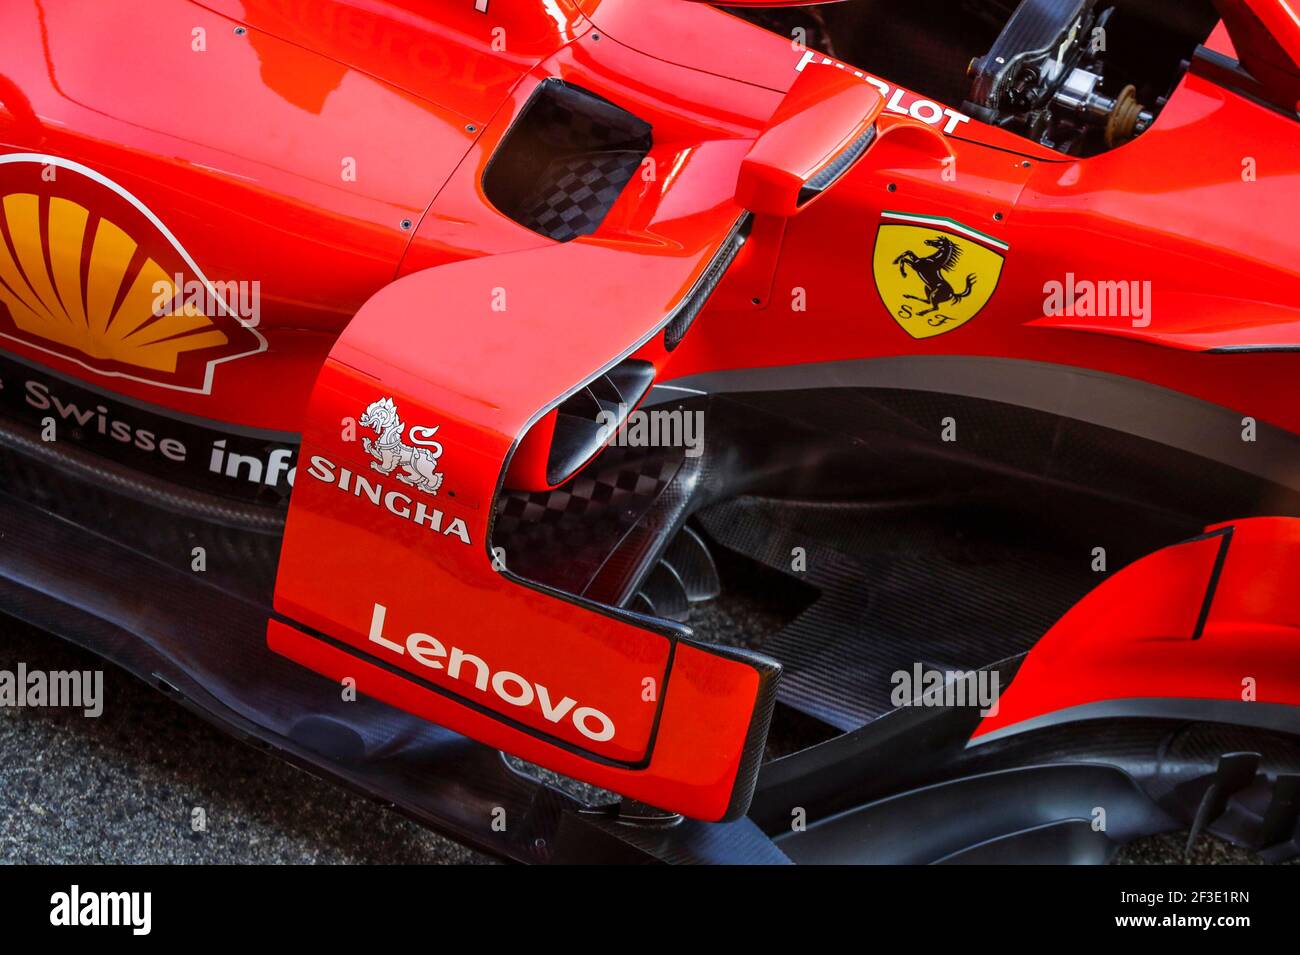 Details der Seitenpods und Barge Boards der Scuderia Ferrari SF71H, Mechanische Details während der Formel 1 Wintertests 2018 in Barcelona, Spanien von Februar 26 bis März 01 - Foto Florent Gooden / DPPI Stockfoto